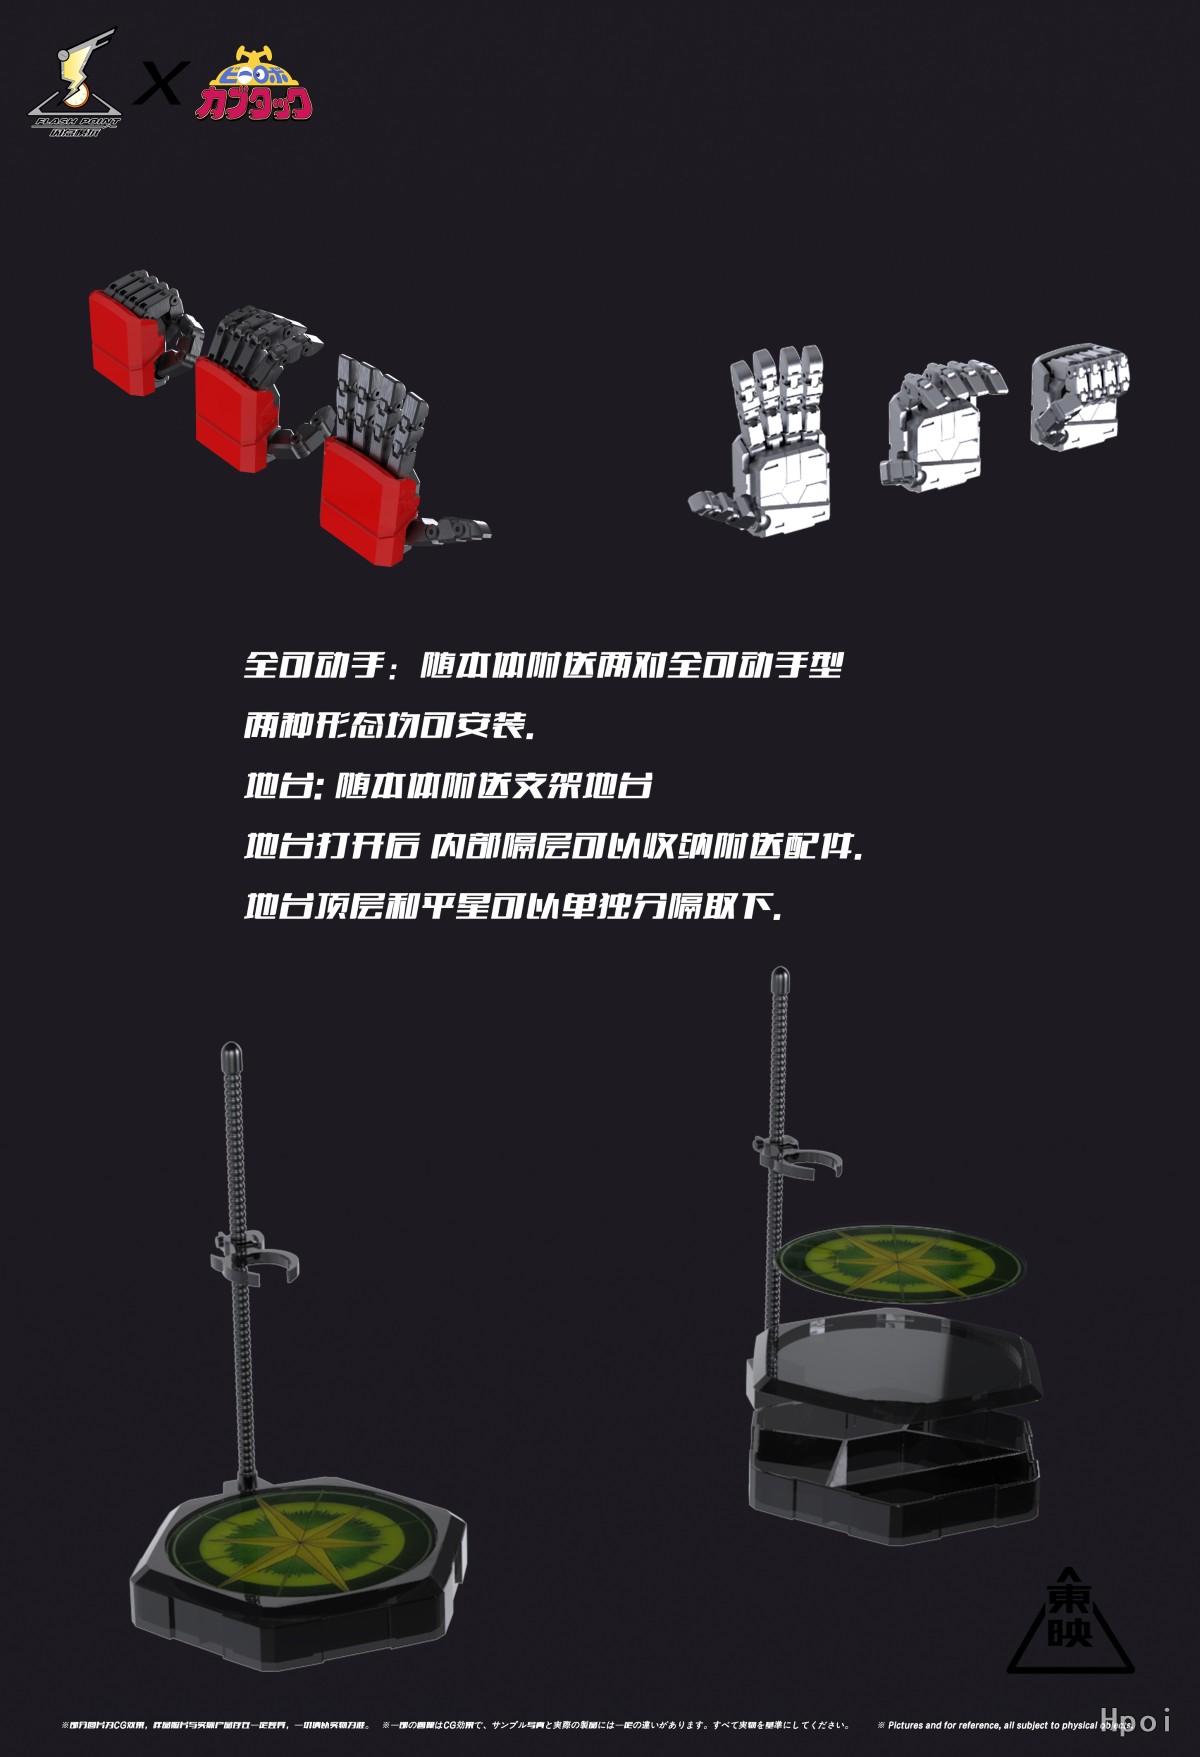 铁甲小宝所有b系列机器人超级变换形态定格动画重制版(附带人物简介)